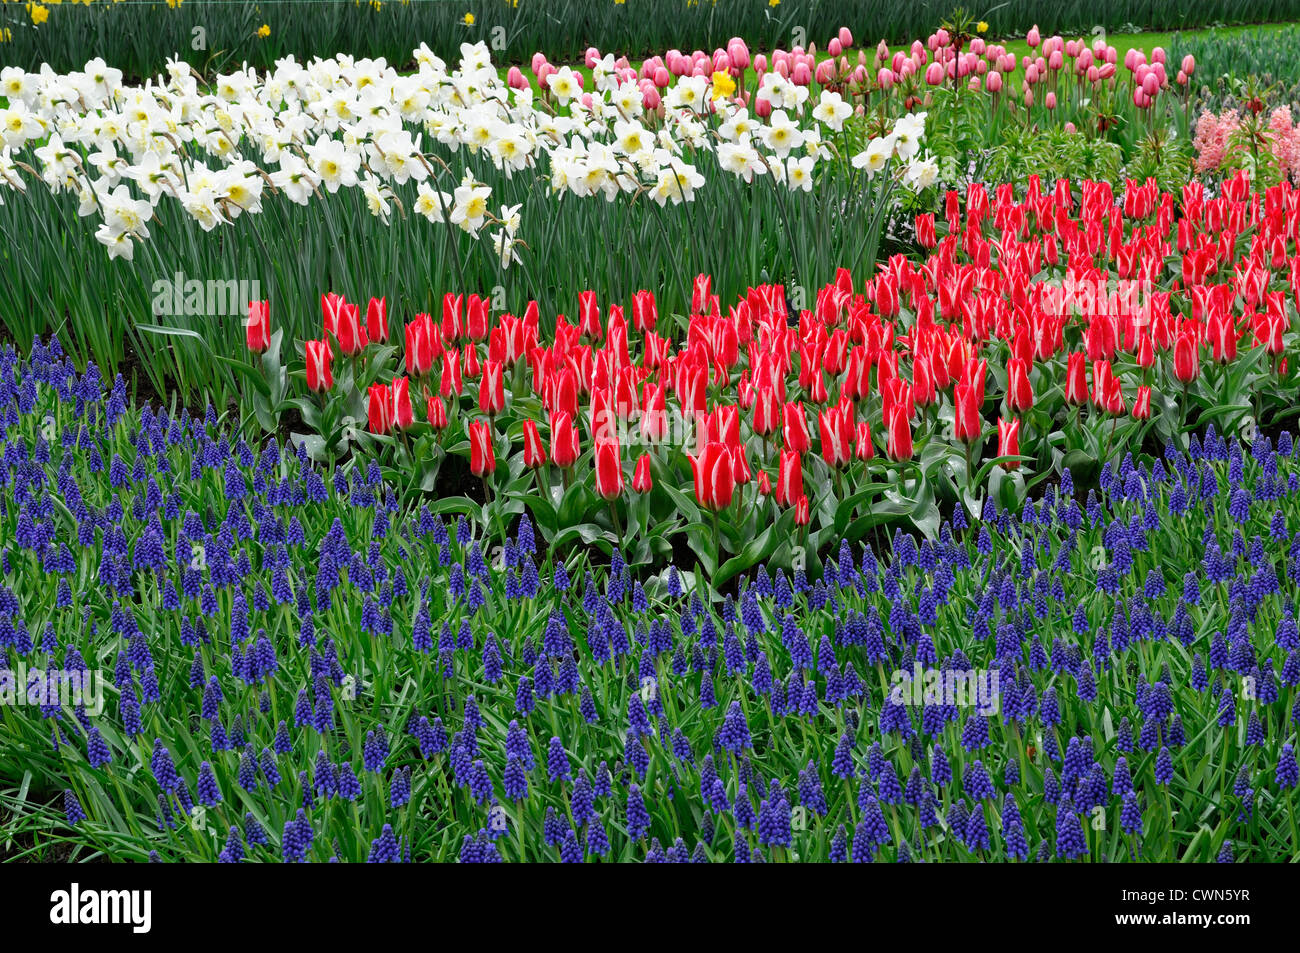 Pinocchio tulipa greigii rosso tulip fiori blu muscari armeniacum Narcissus ice follies bianco giallo a letto misto combinatio vegetale Foto Stock